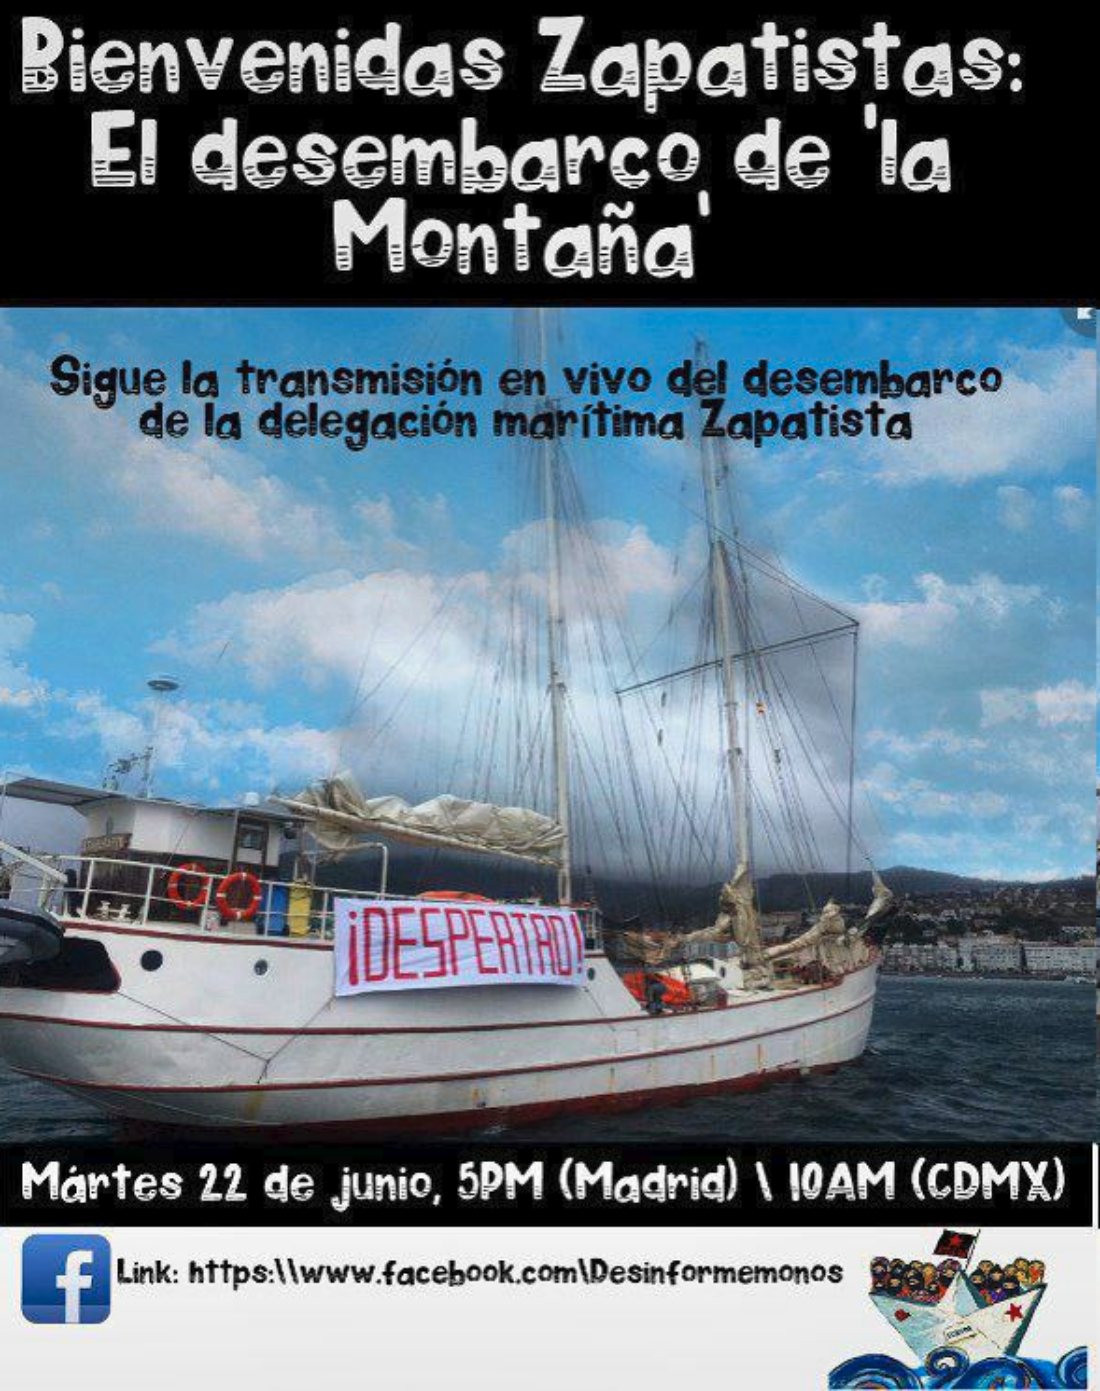 Bienvenidas Zapatistas | Transmisión en directo desde Vigo del desembarco Zapatista